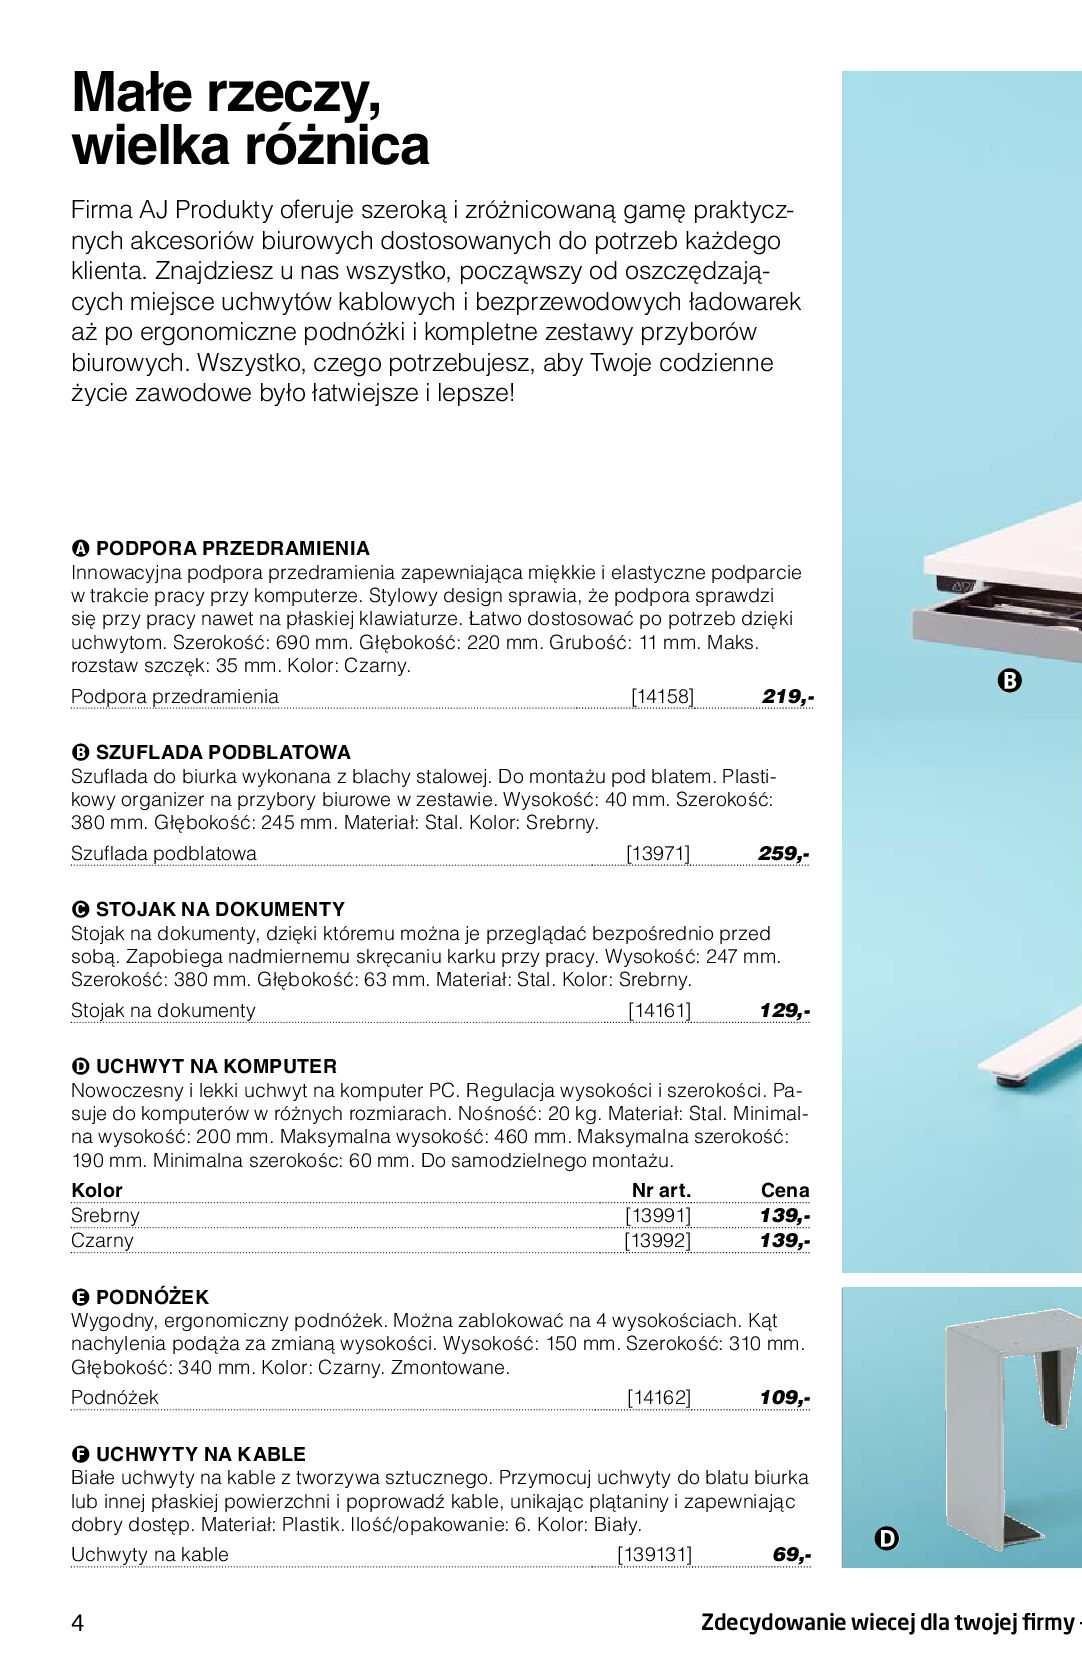 Gazetka AJ Produkty: Katalog AJ Produkty - Wyposażenie 2022 2022-02-14 page-7